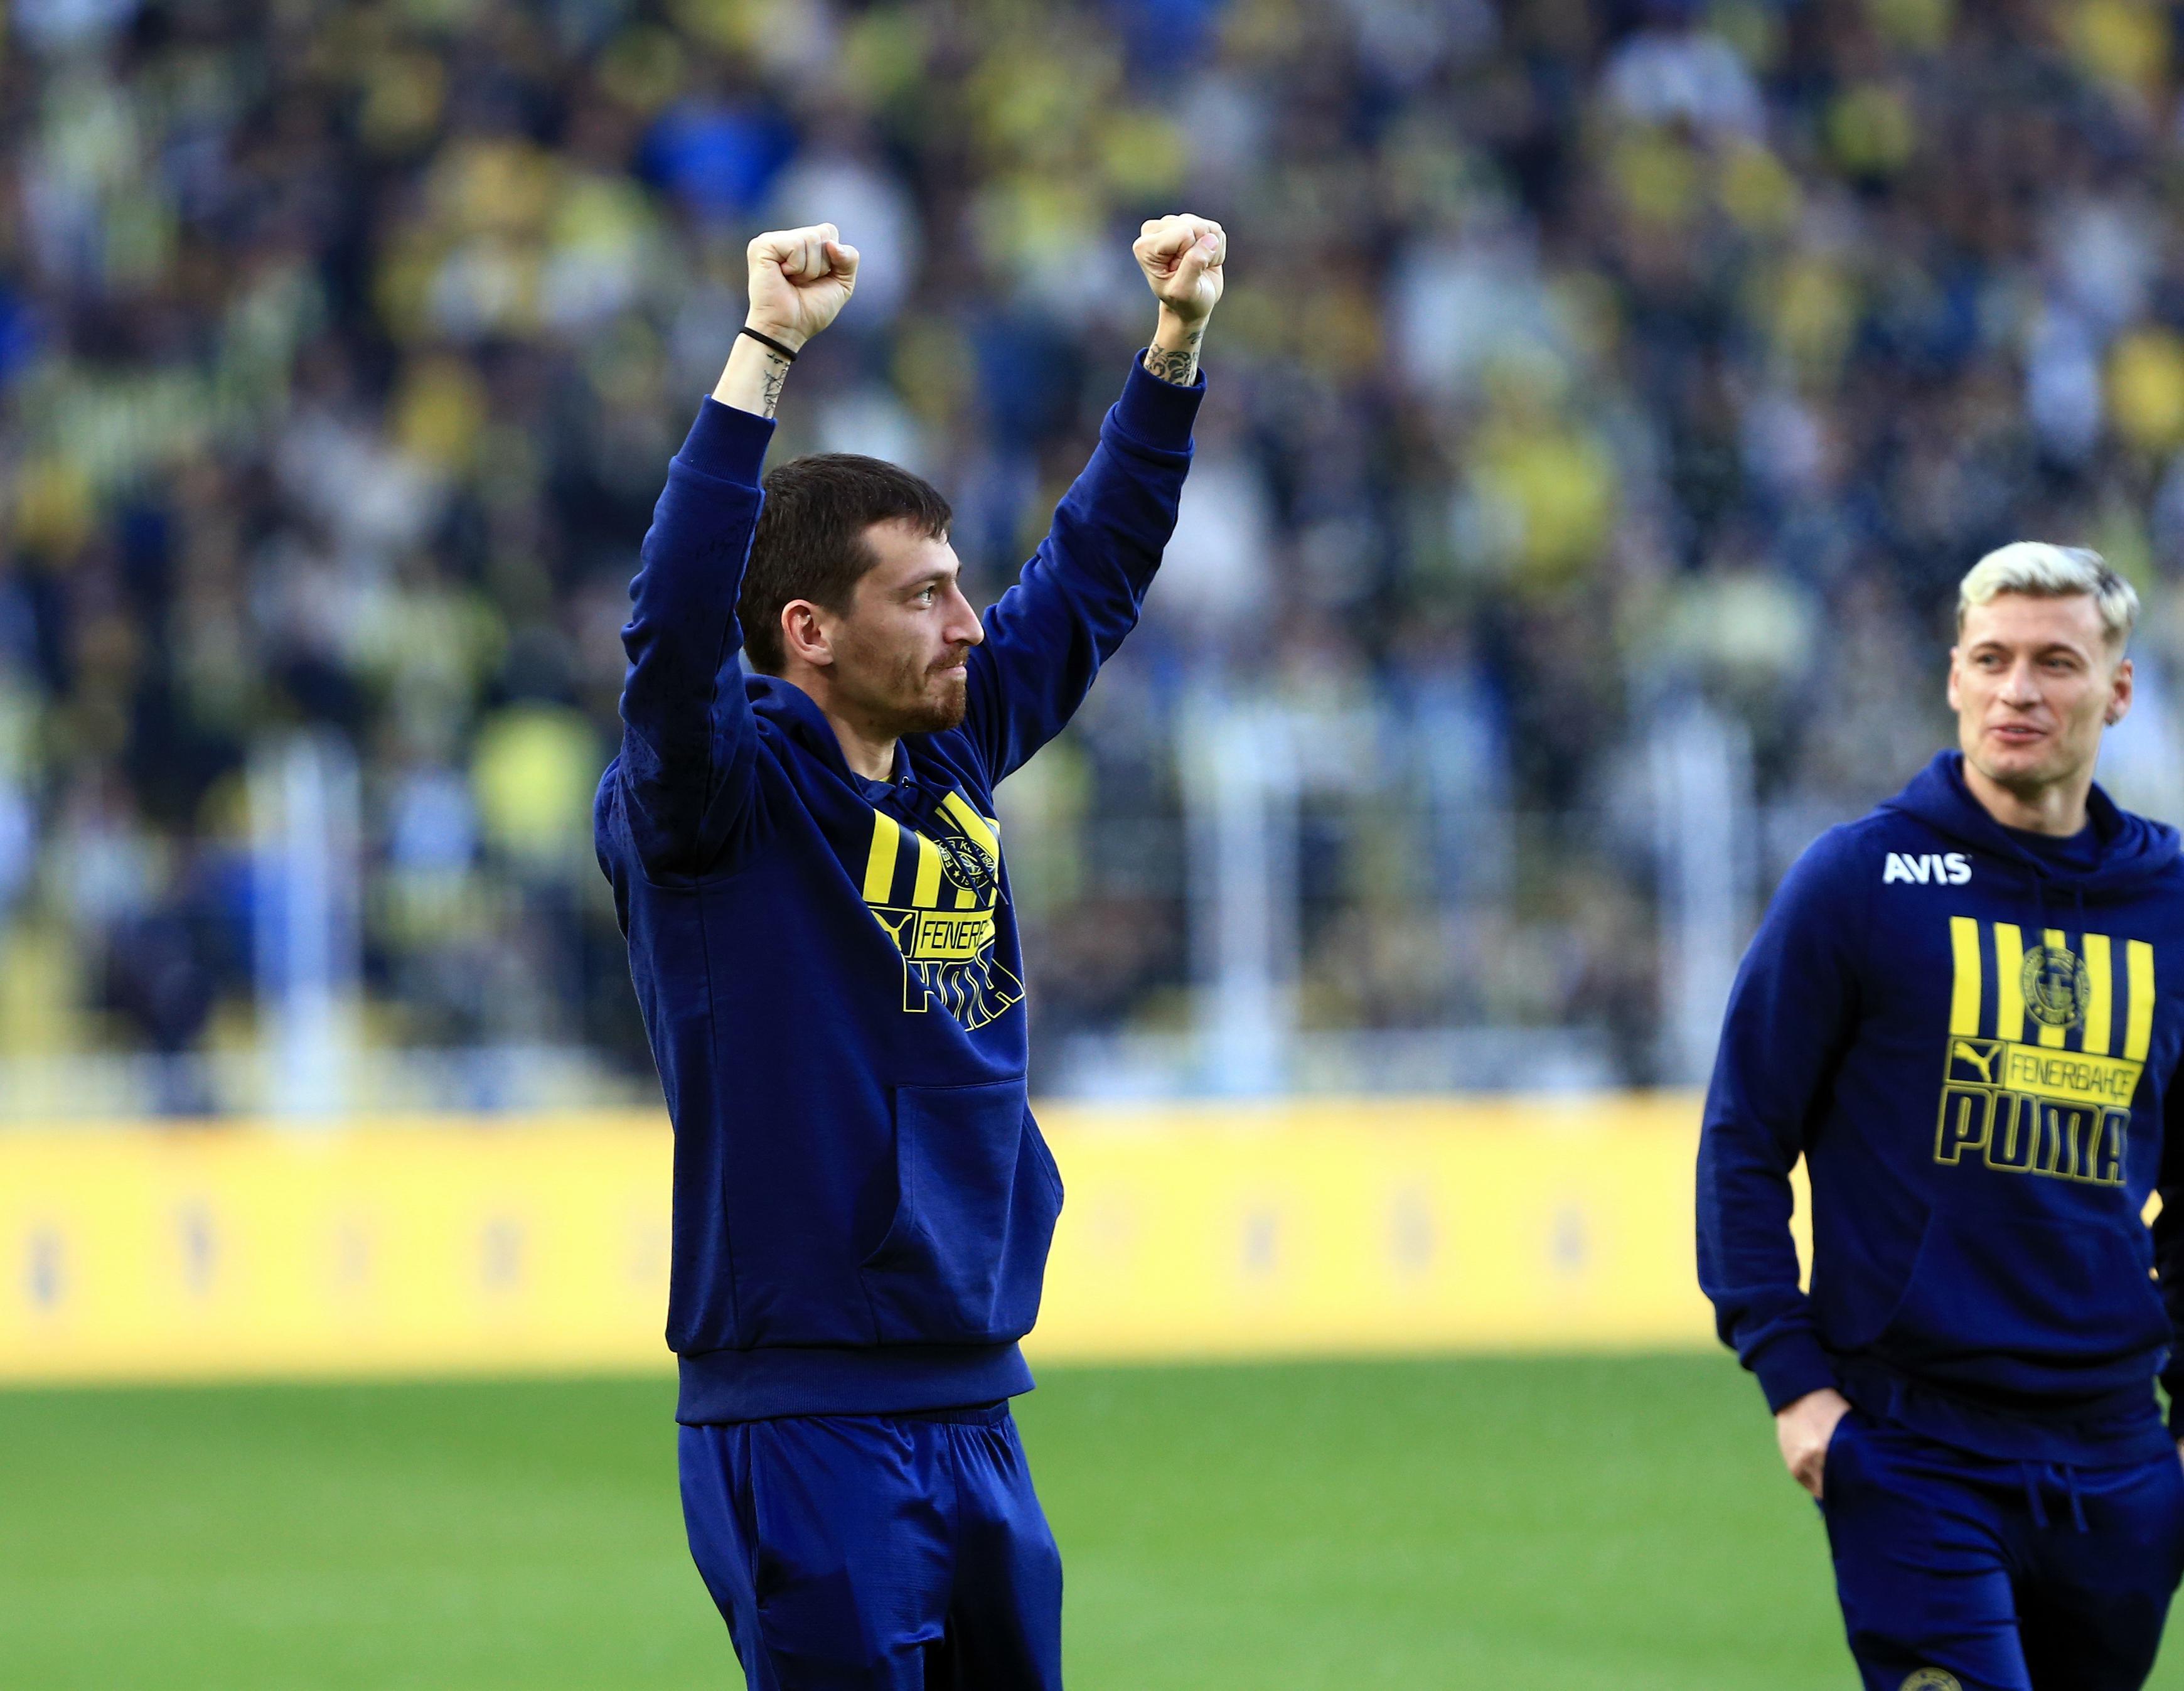 Jorge Jesusun büyük maç sendromu Fenerbahçede de sürüyor